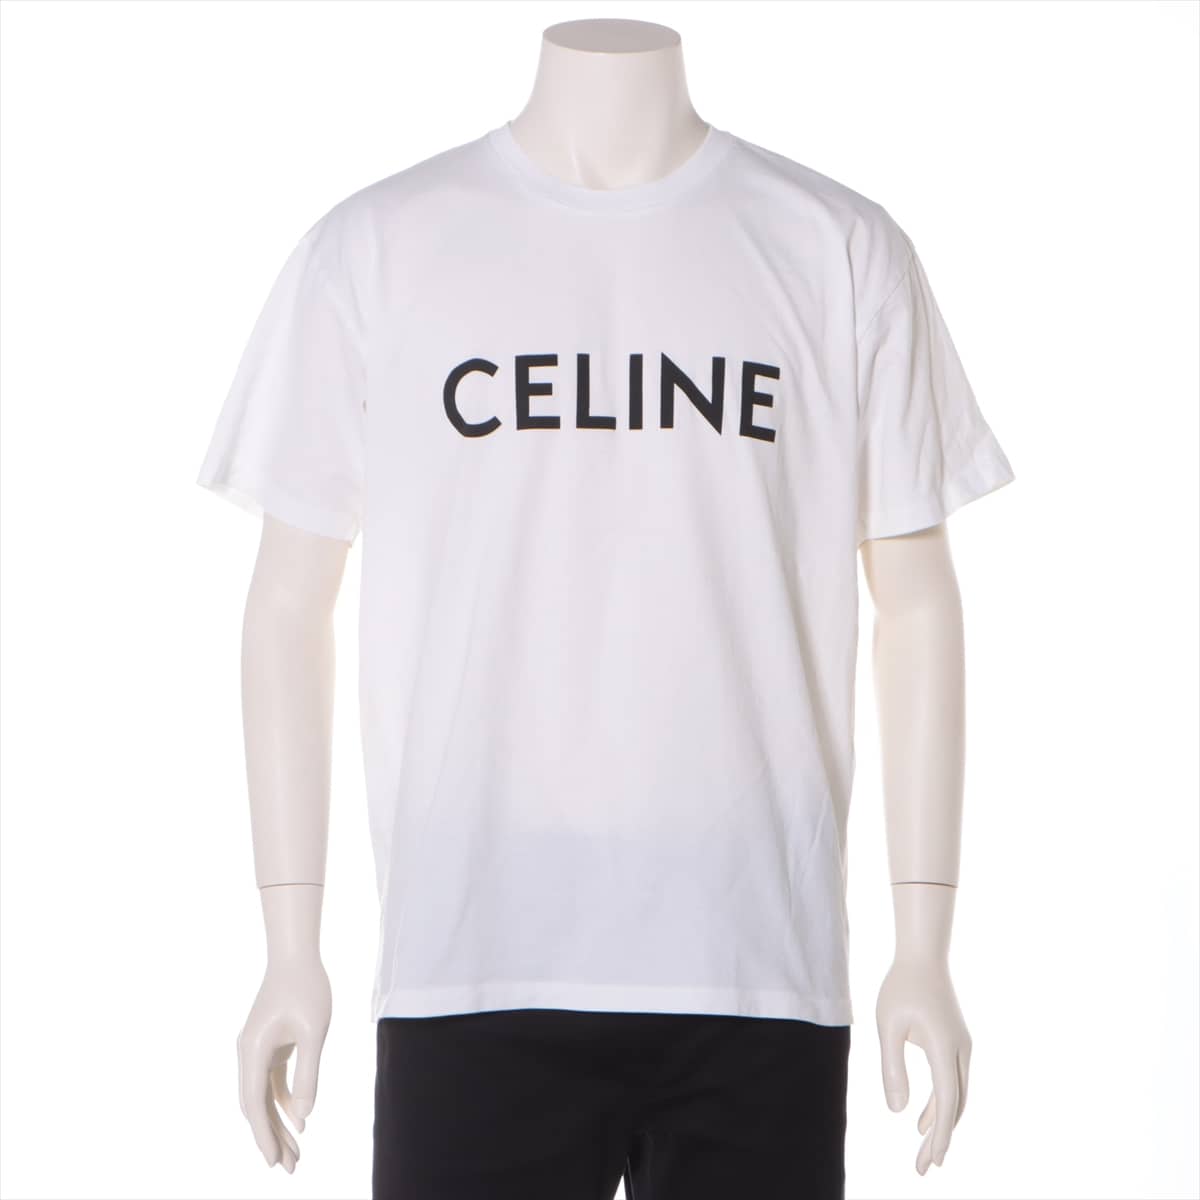 CELINE 21SS Cotton T-shirt S Men's White  2X681501F Eddie period